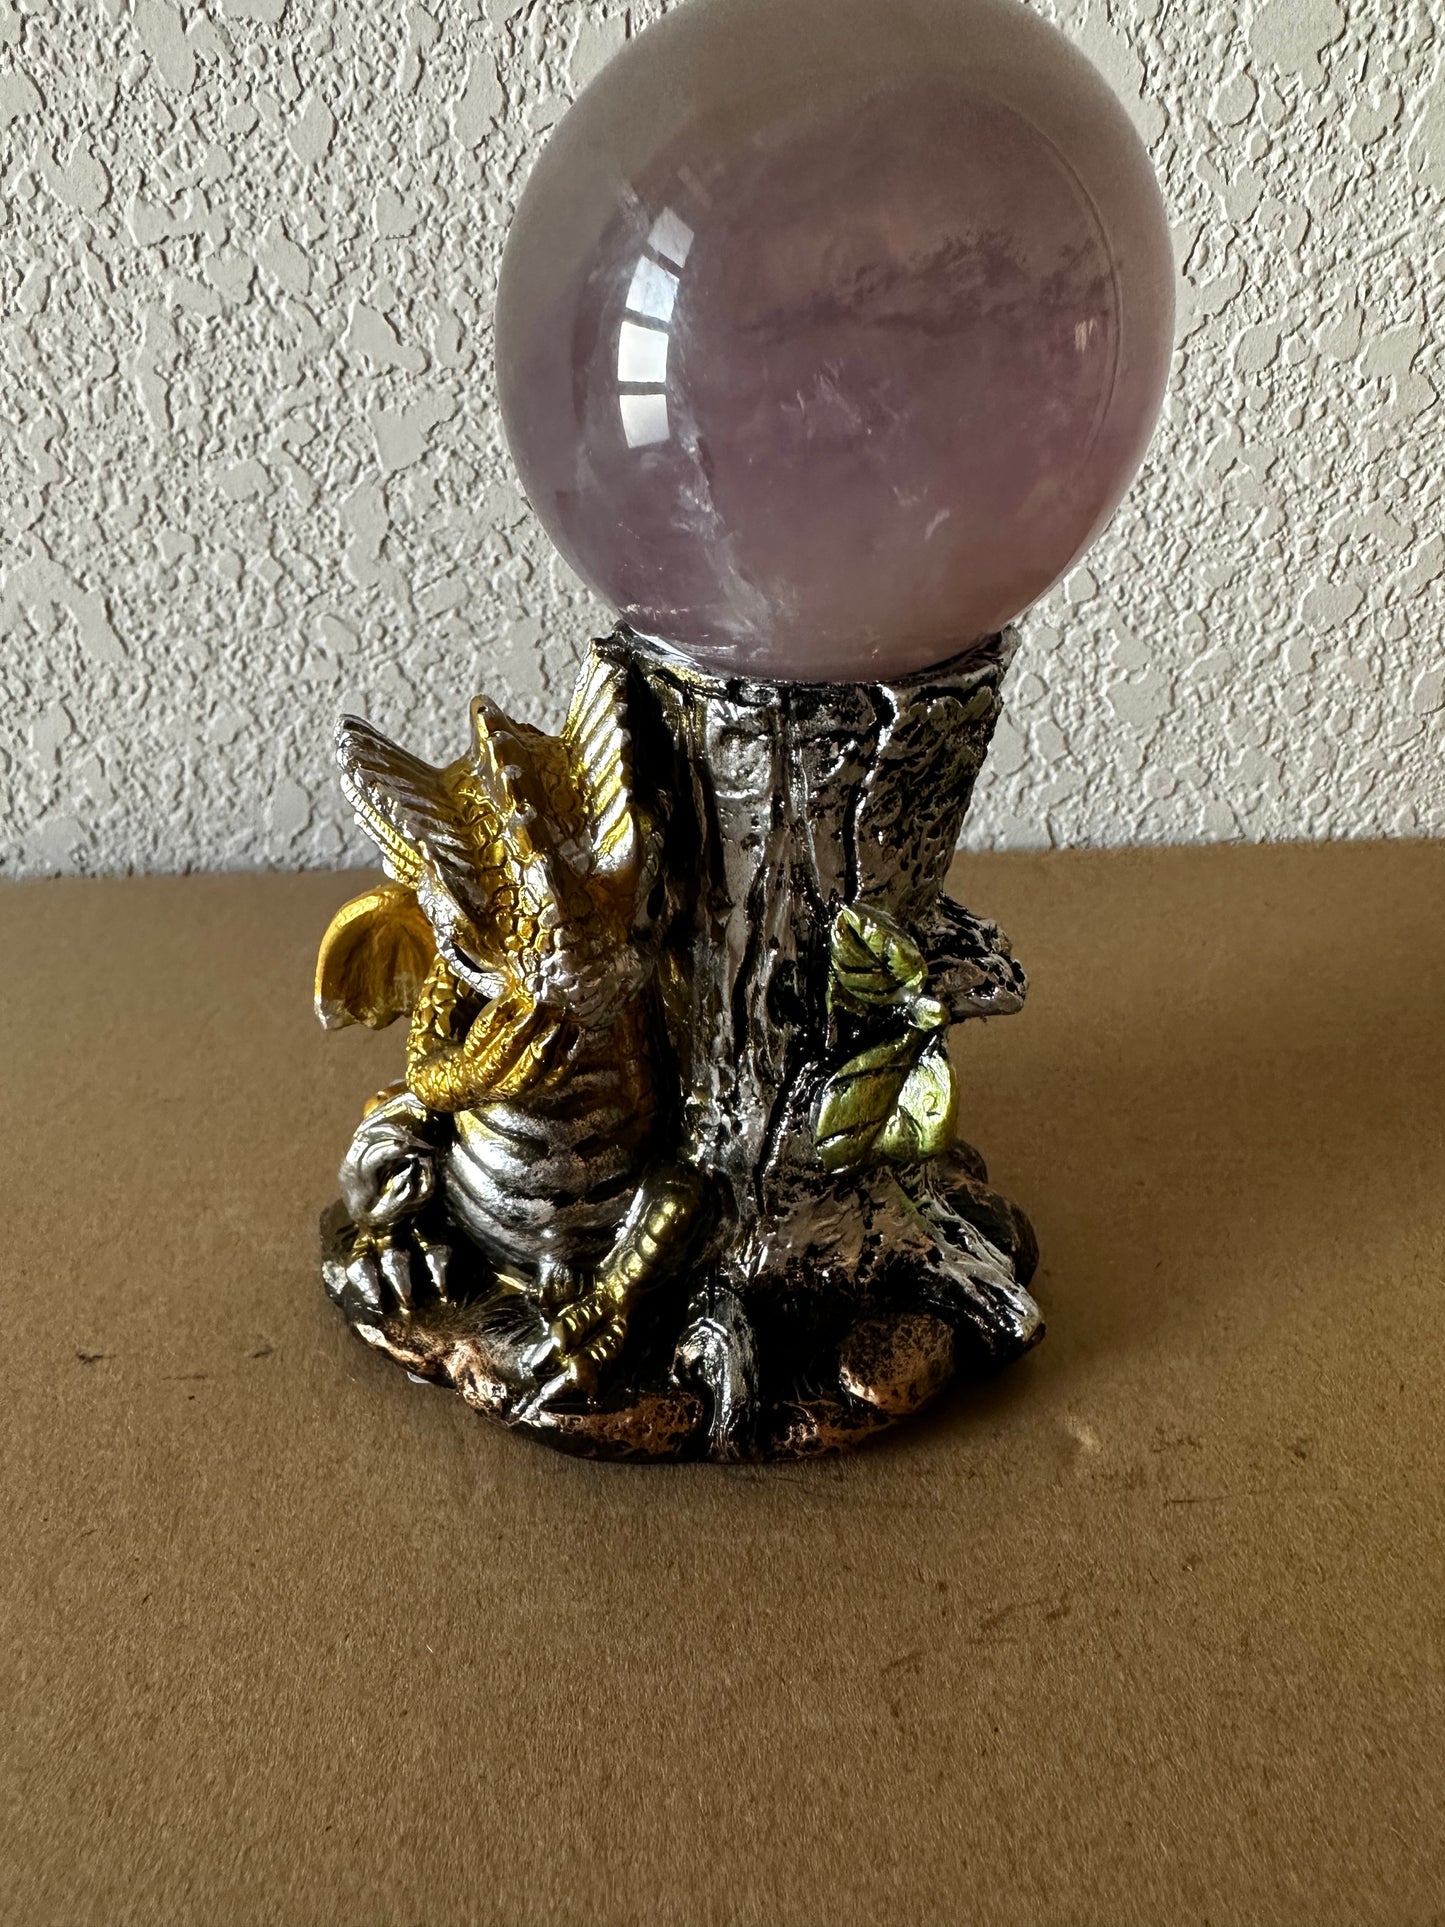 Dragon sphere holder